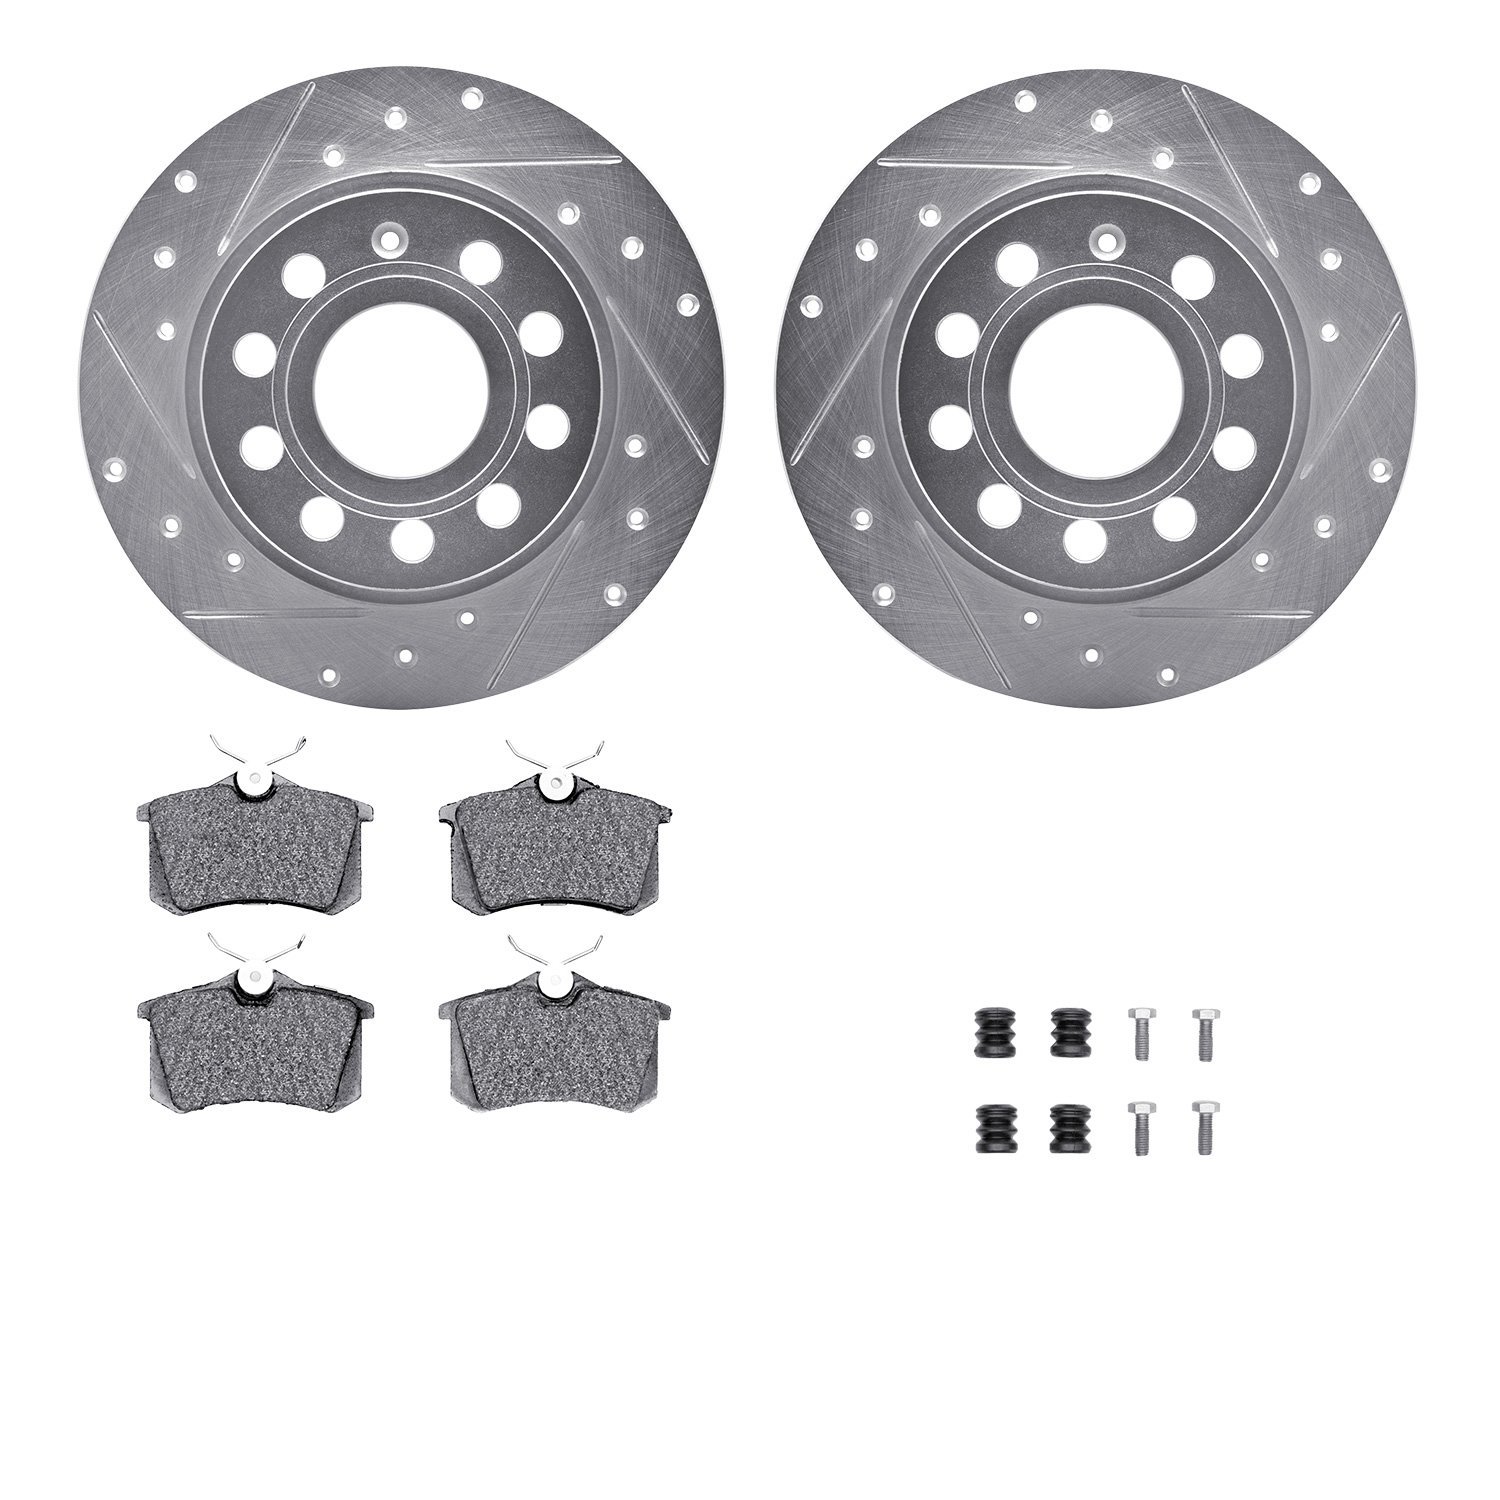 7612-74044 Drilled/Slotted Brake Rotors w/5000 Euro Ceramic Brake Pads Kit & Hardware [Silver], 2010-2019 Audi/Volkswagen, Posit